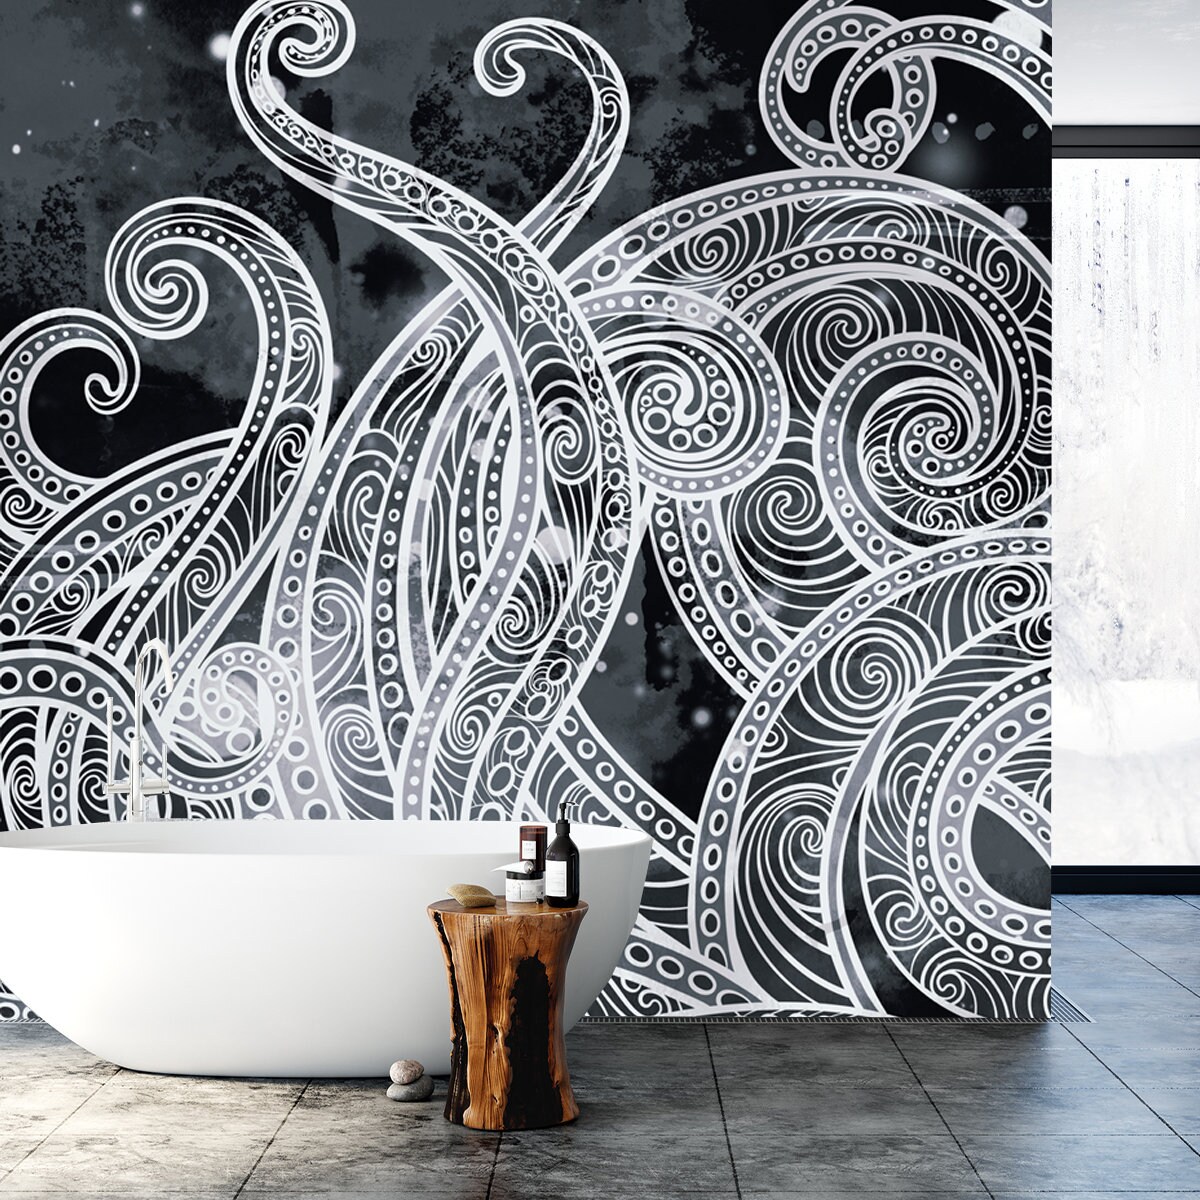 Wallpaper murals Bathroom tools set graphic elements in flat